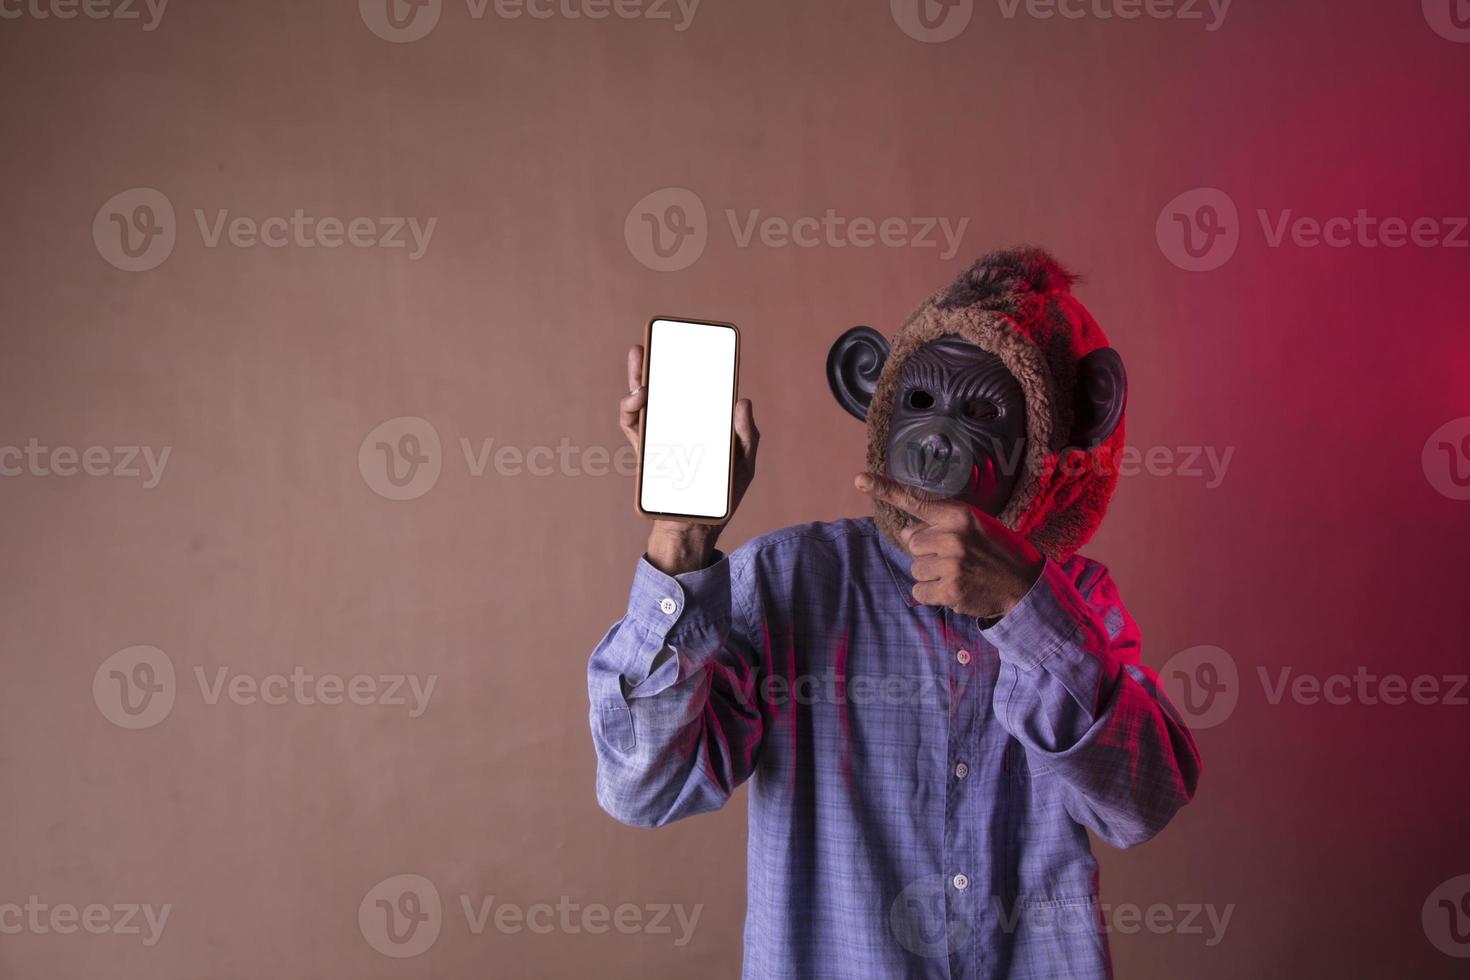 homme asiatique portant une longue chemise bleue avec un masque de singe montrant le téléphone, photo